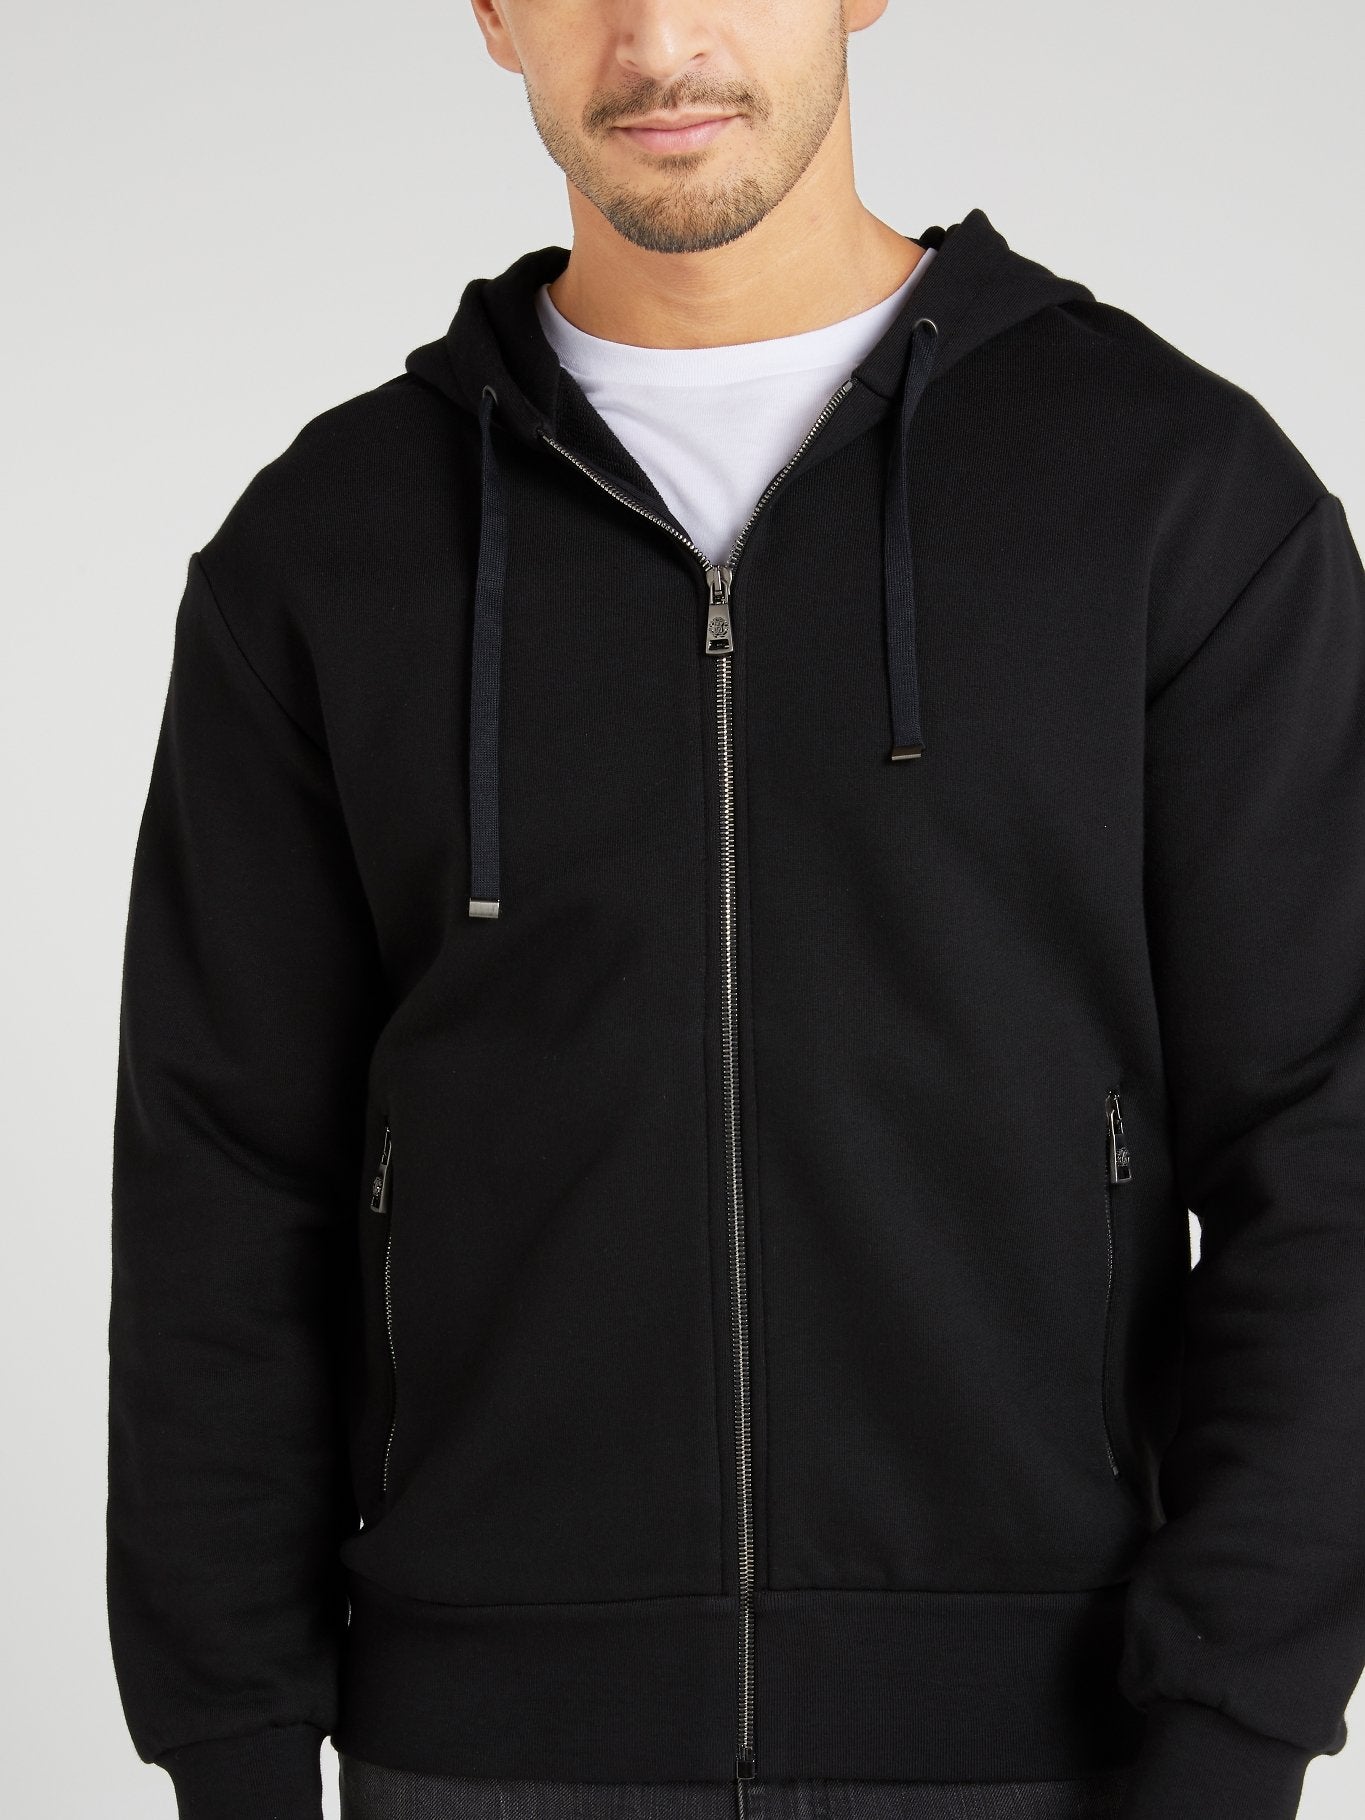 Черная куртка с вышитым на спине логотипом